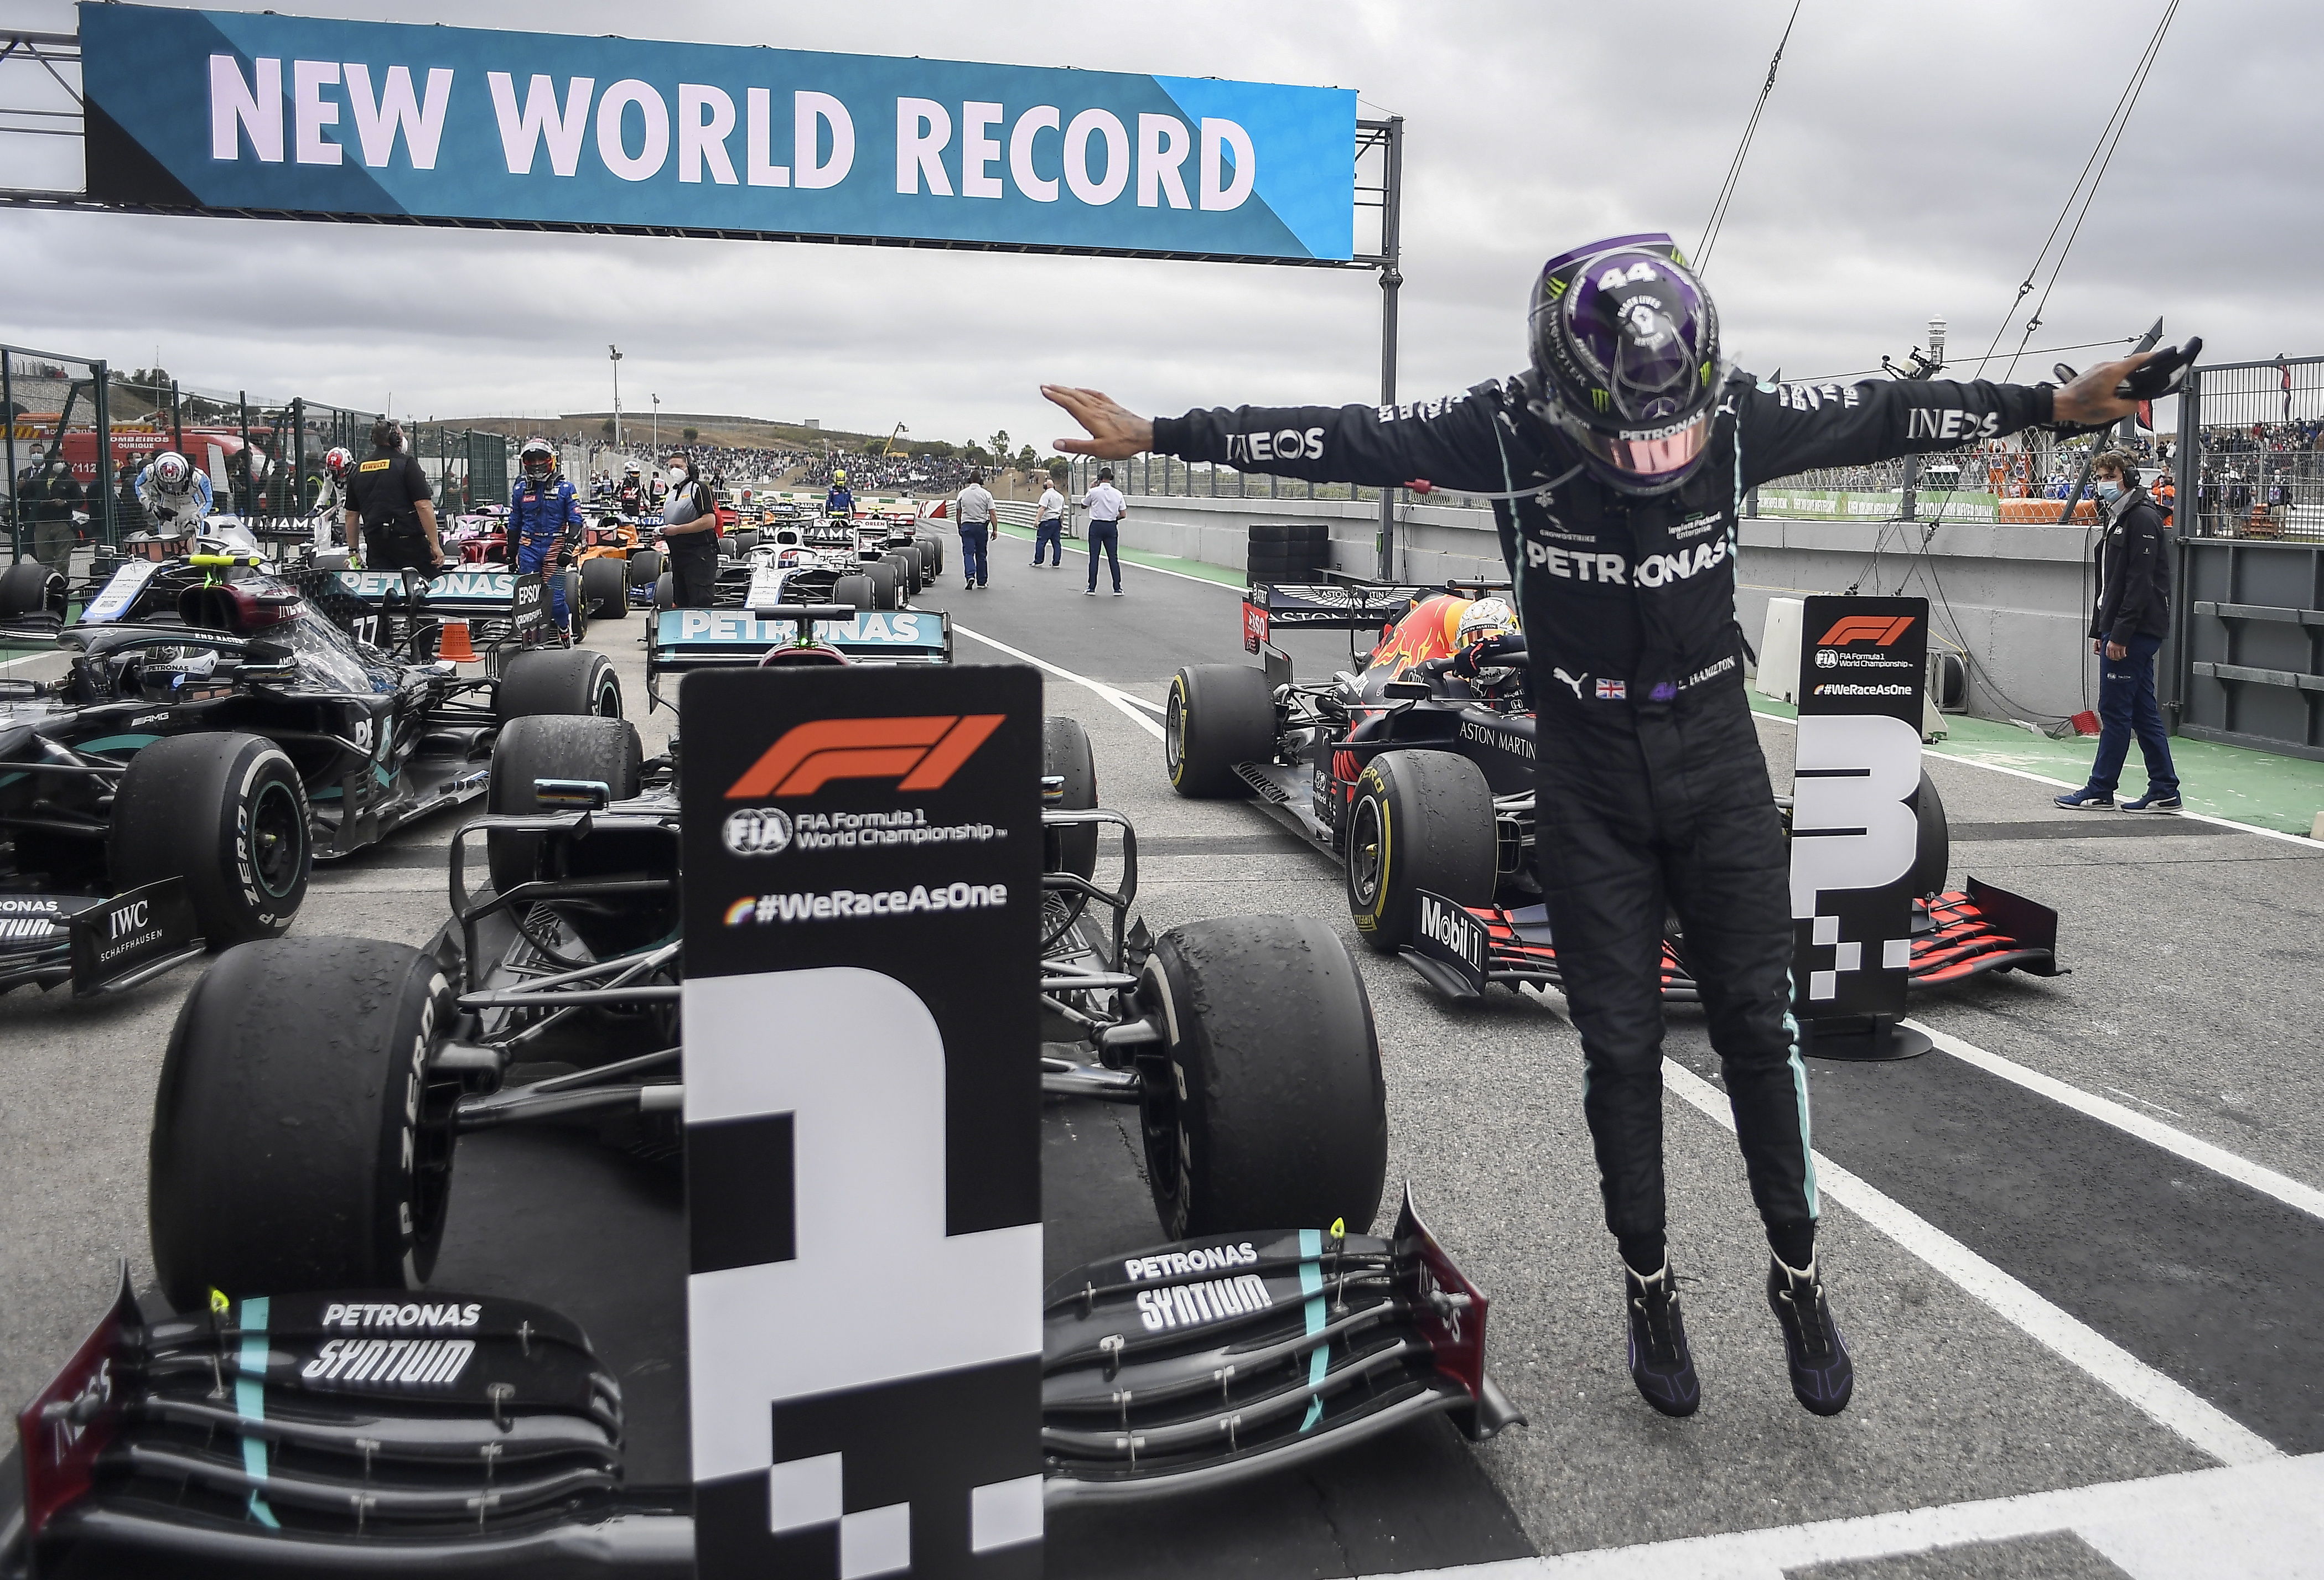 El piloto británico Lewis Hamilton de Mercedes-AMG Petronas, celebra tras ganar el Gran Premio de Portugal y superar a Schumacher como piloto con más victorias en la F1. (Foto Prensa Libre: EFE)